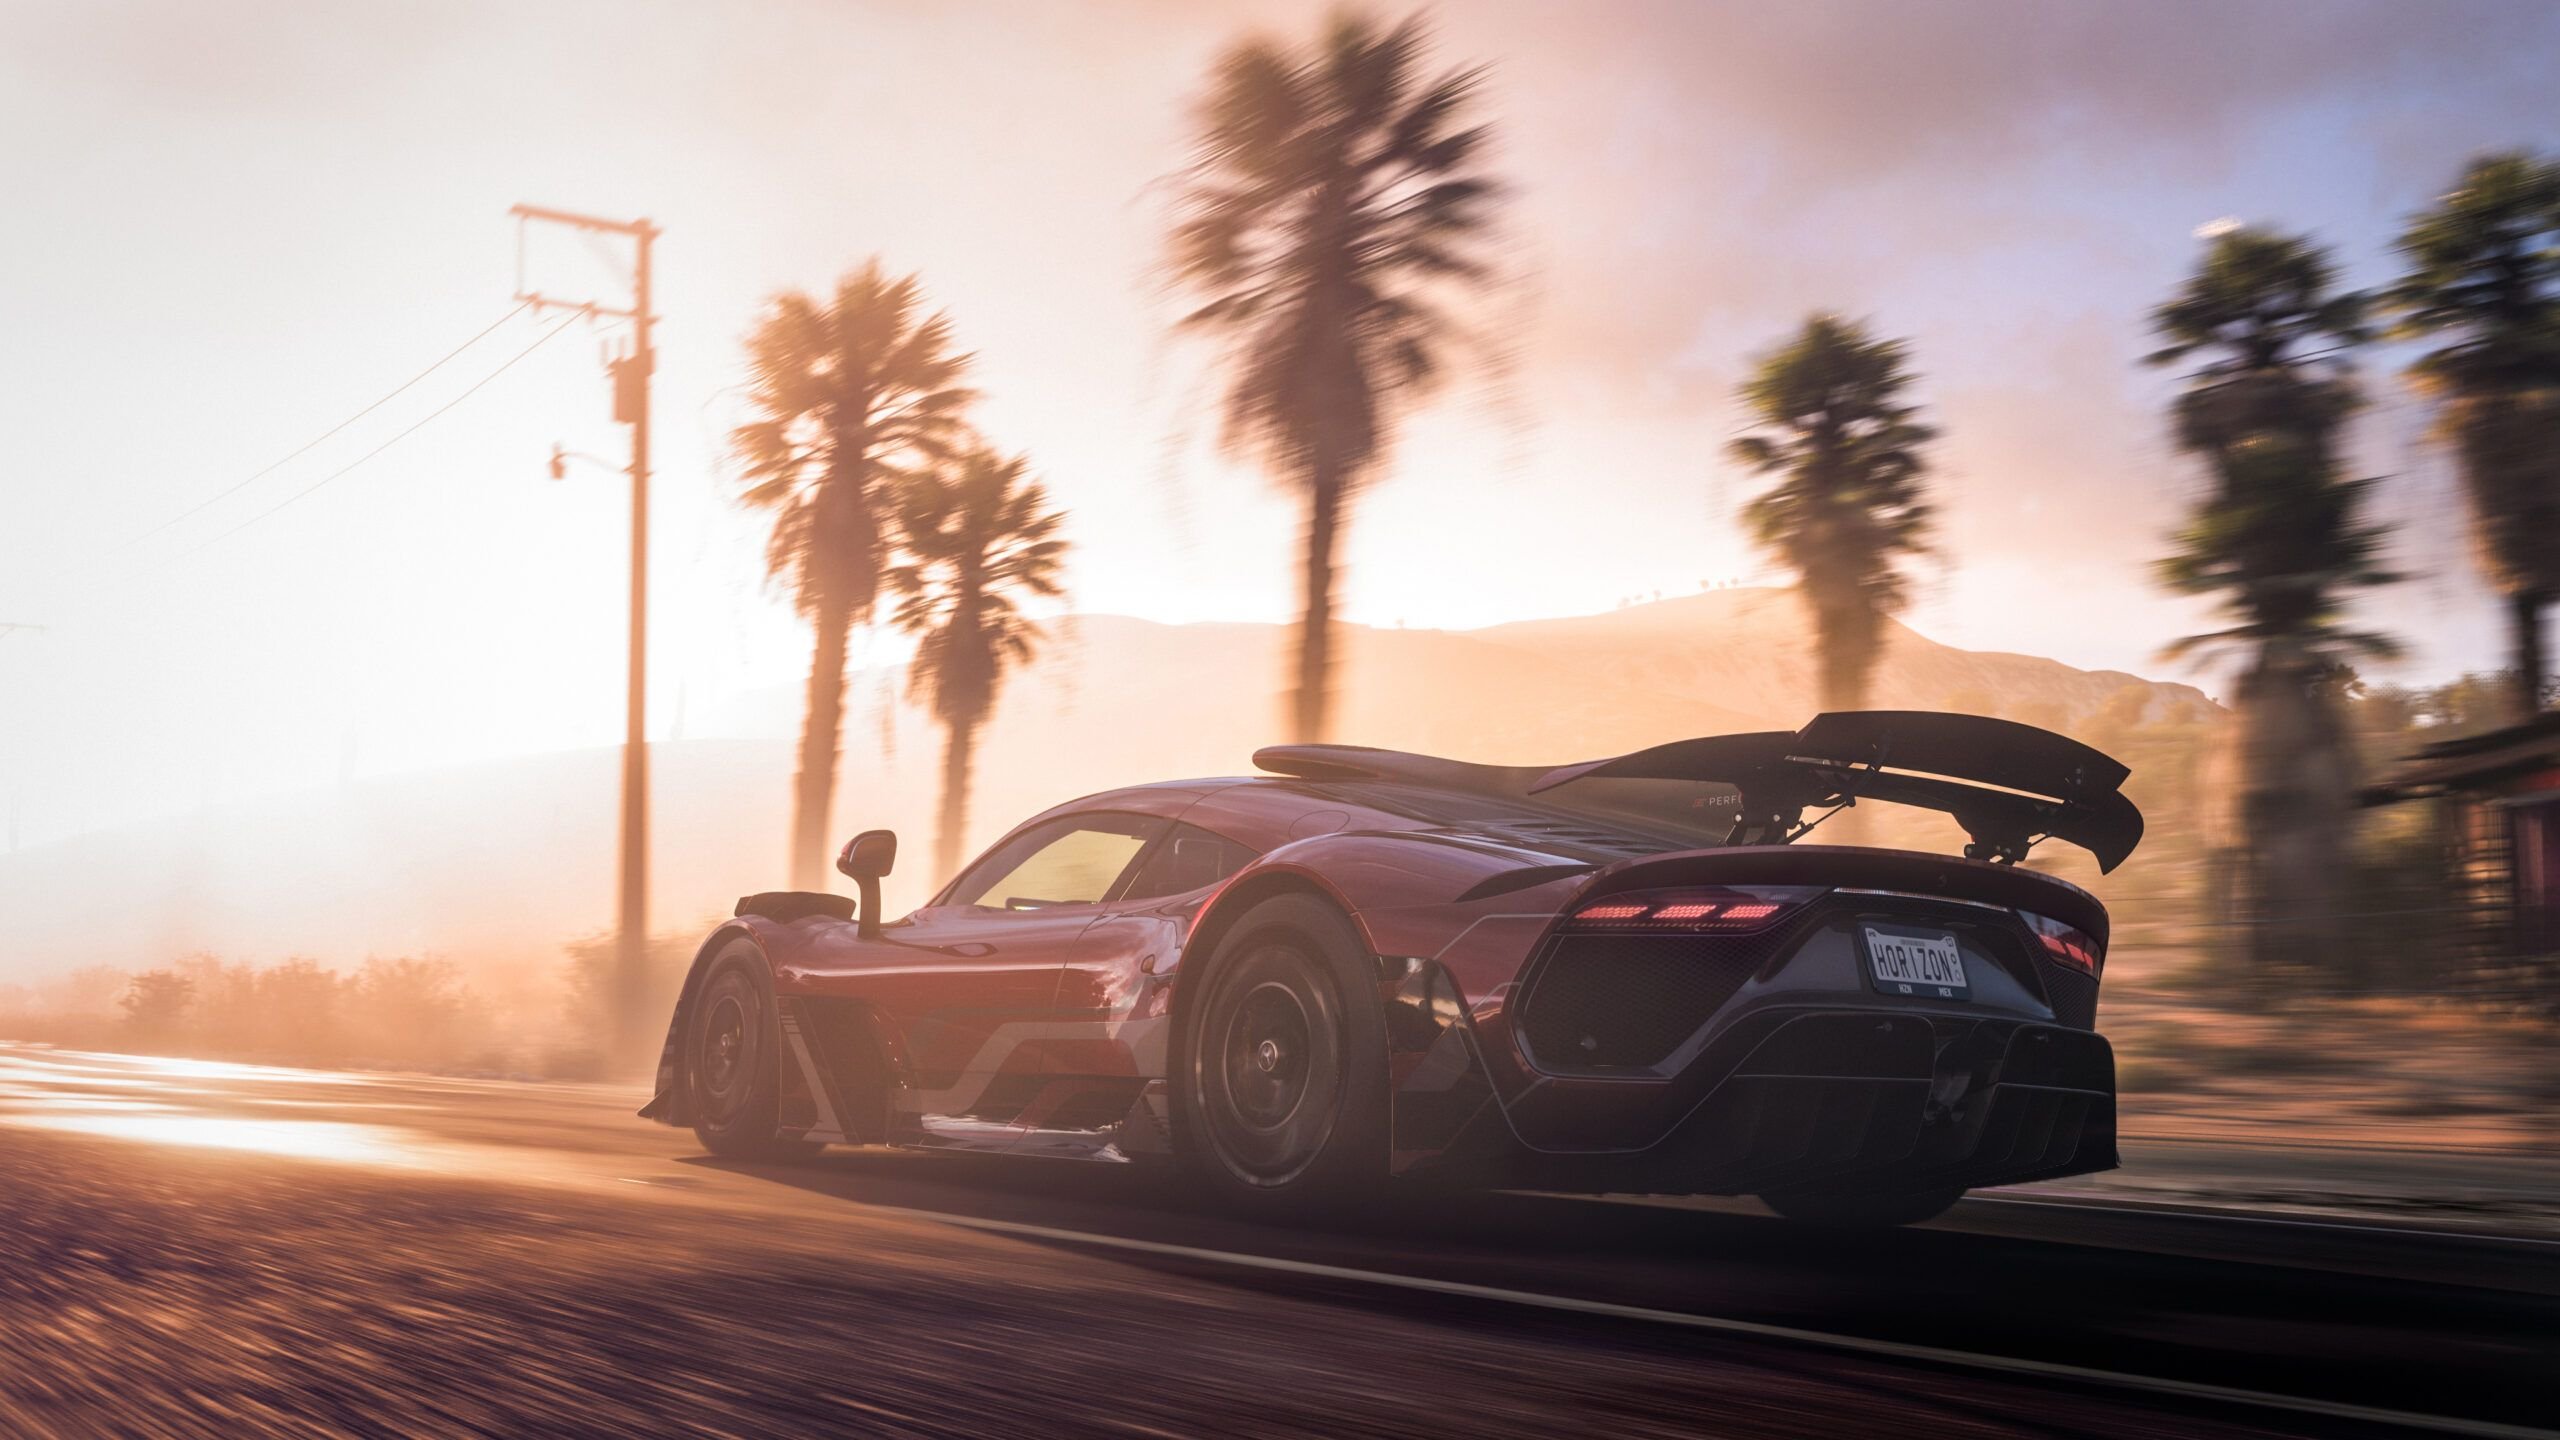 More information about "Nuovi video spettacolari per Gran Turismo 7 e Forza Horizon 5"